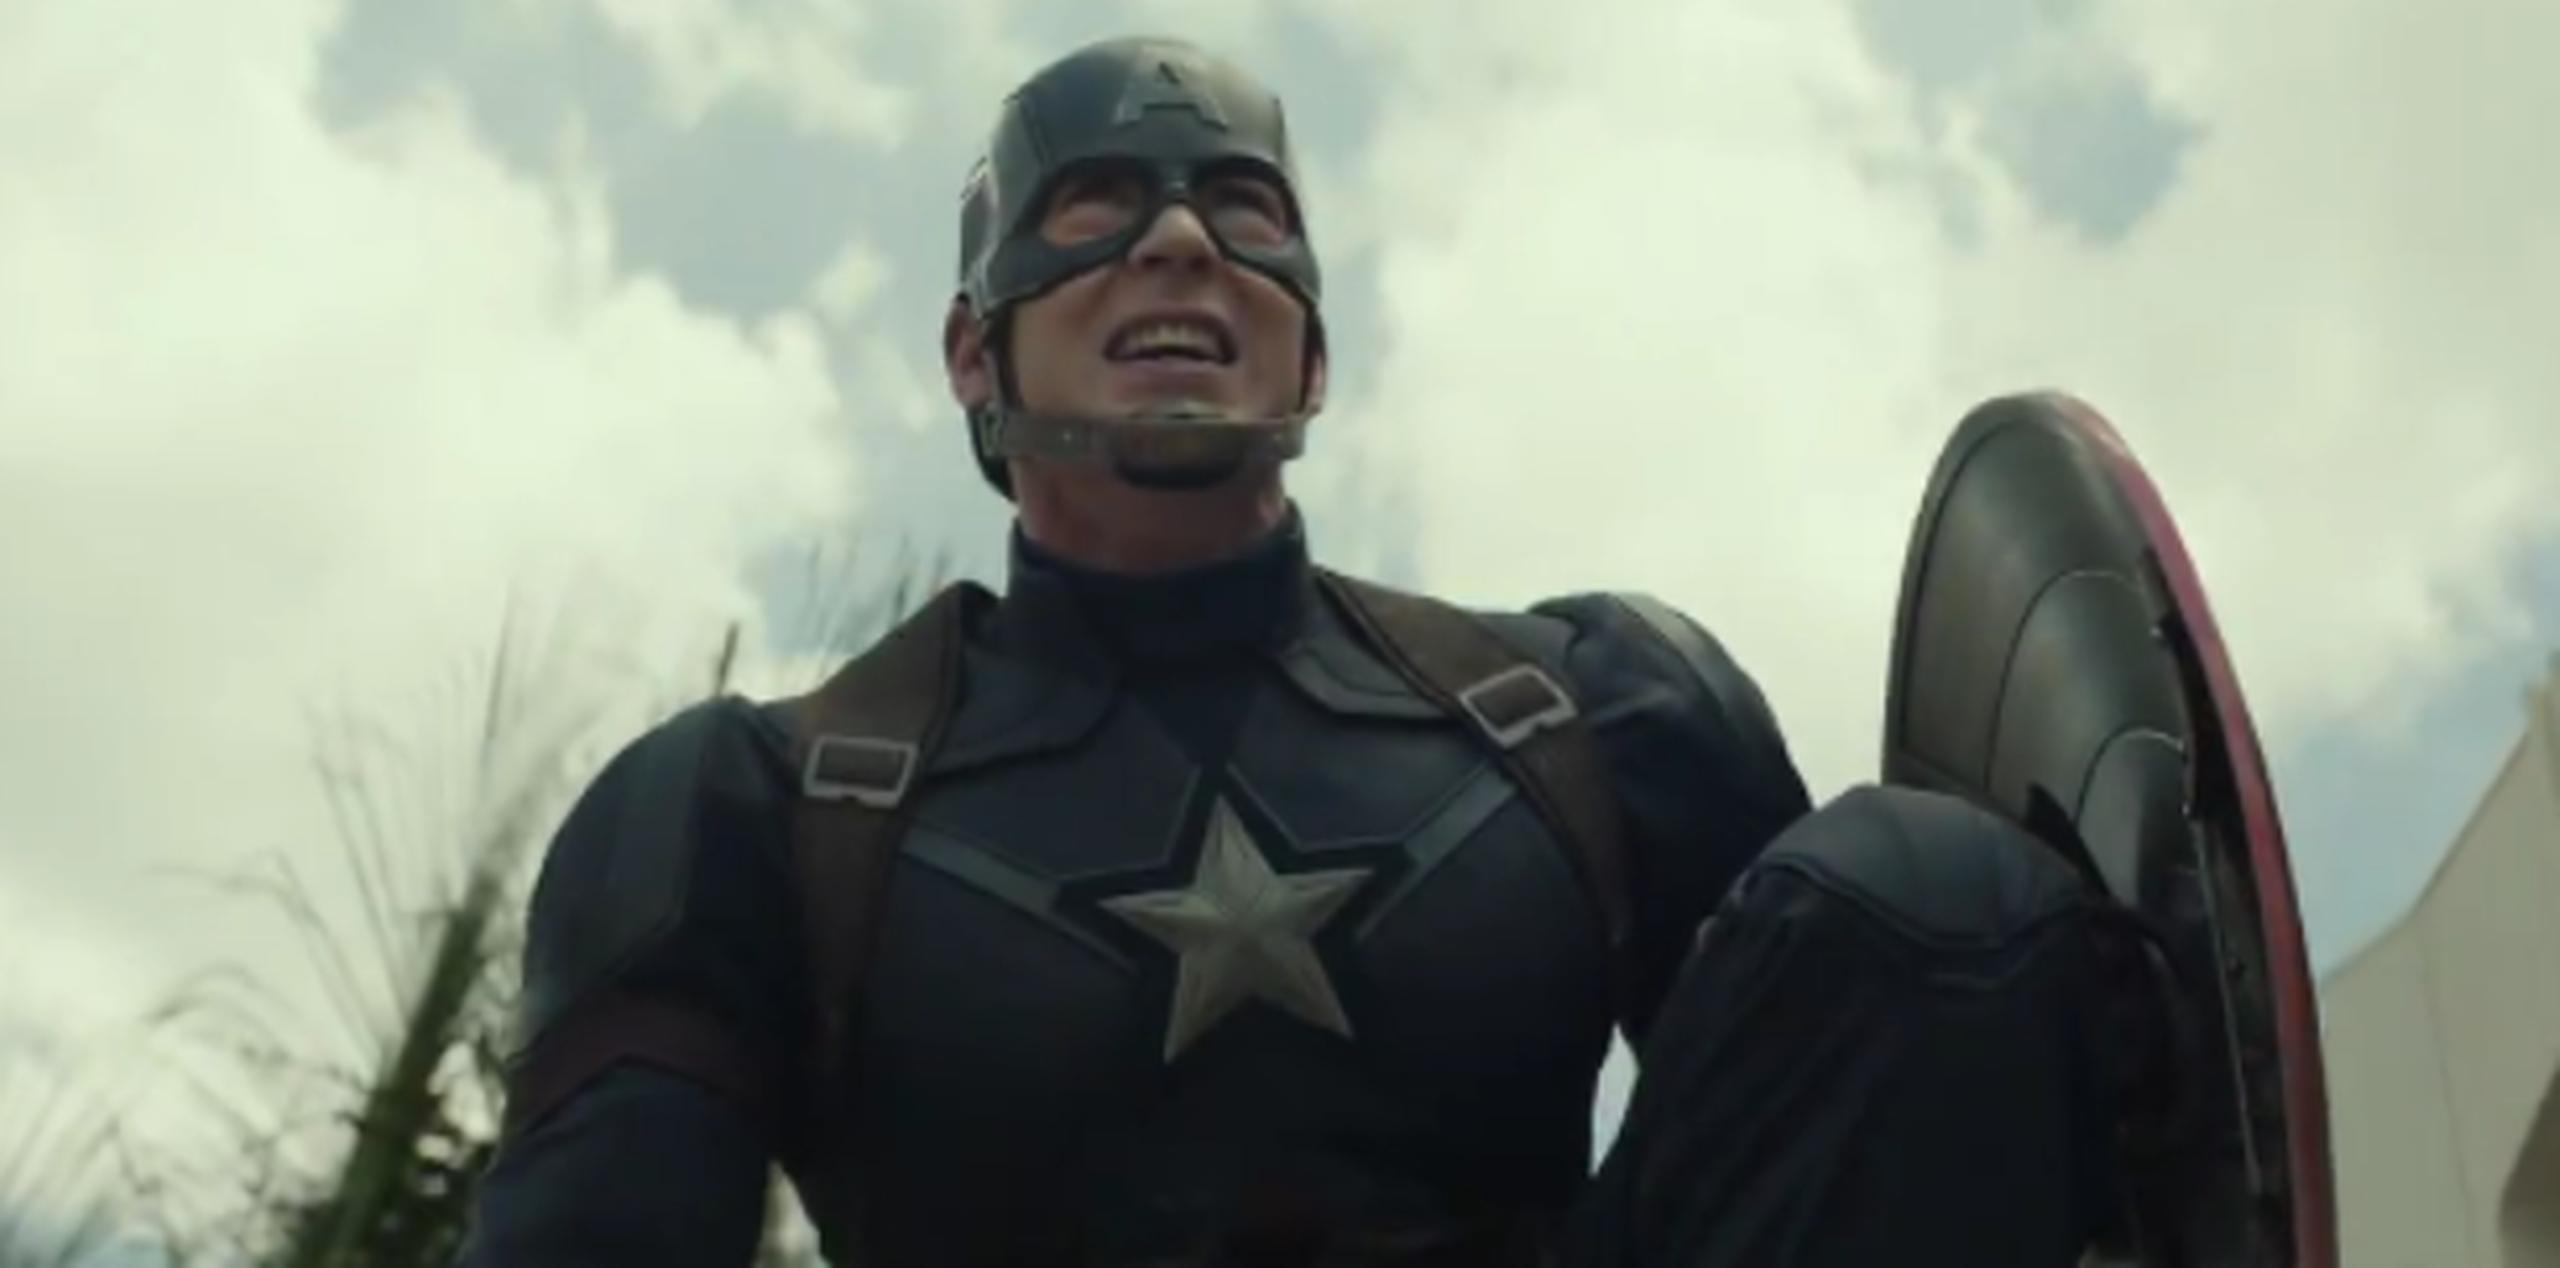 Steve Rogers/Capitán América se convertirá en un prófugo para evitar ser arrestado. (Facebook)